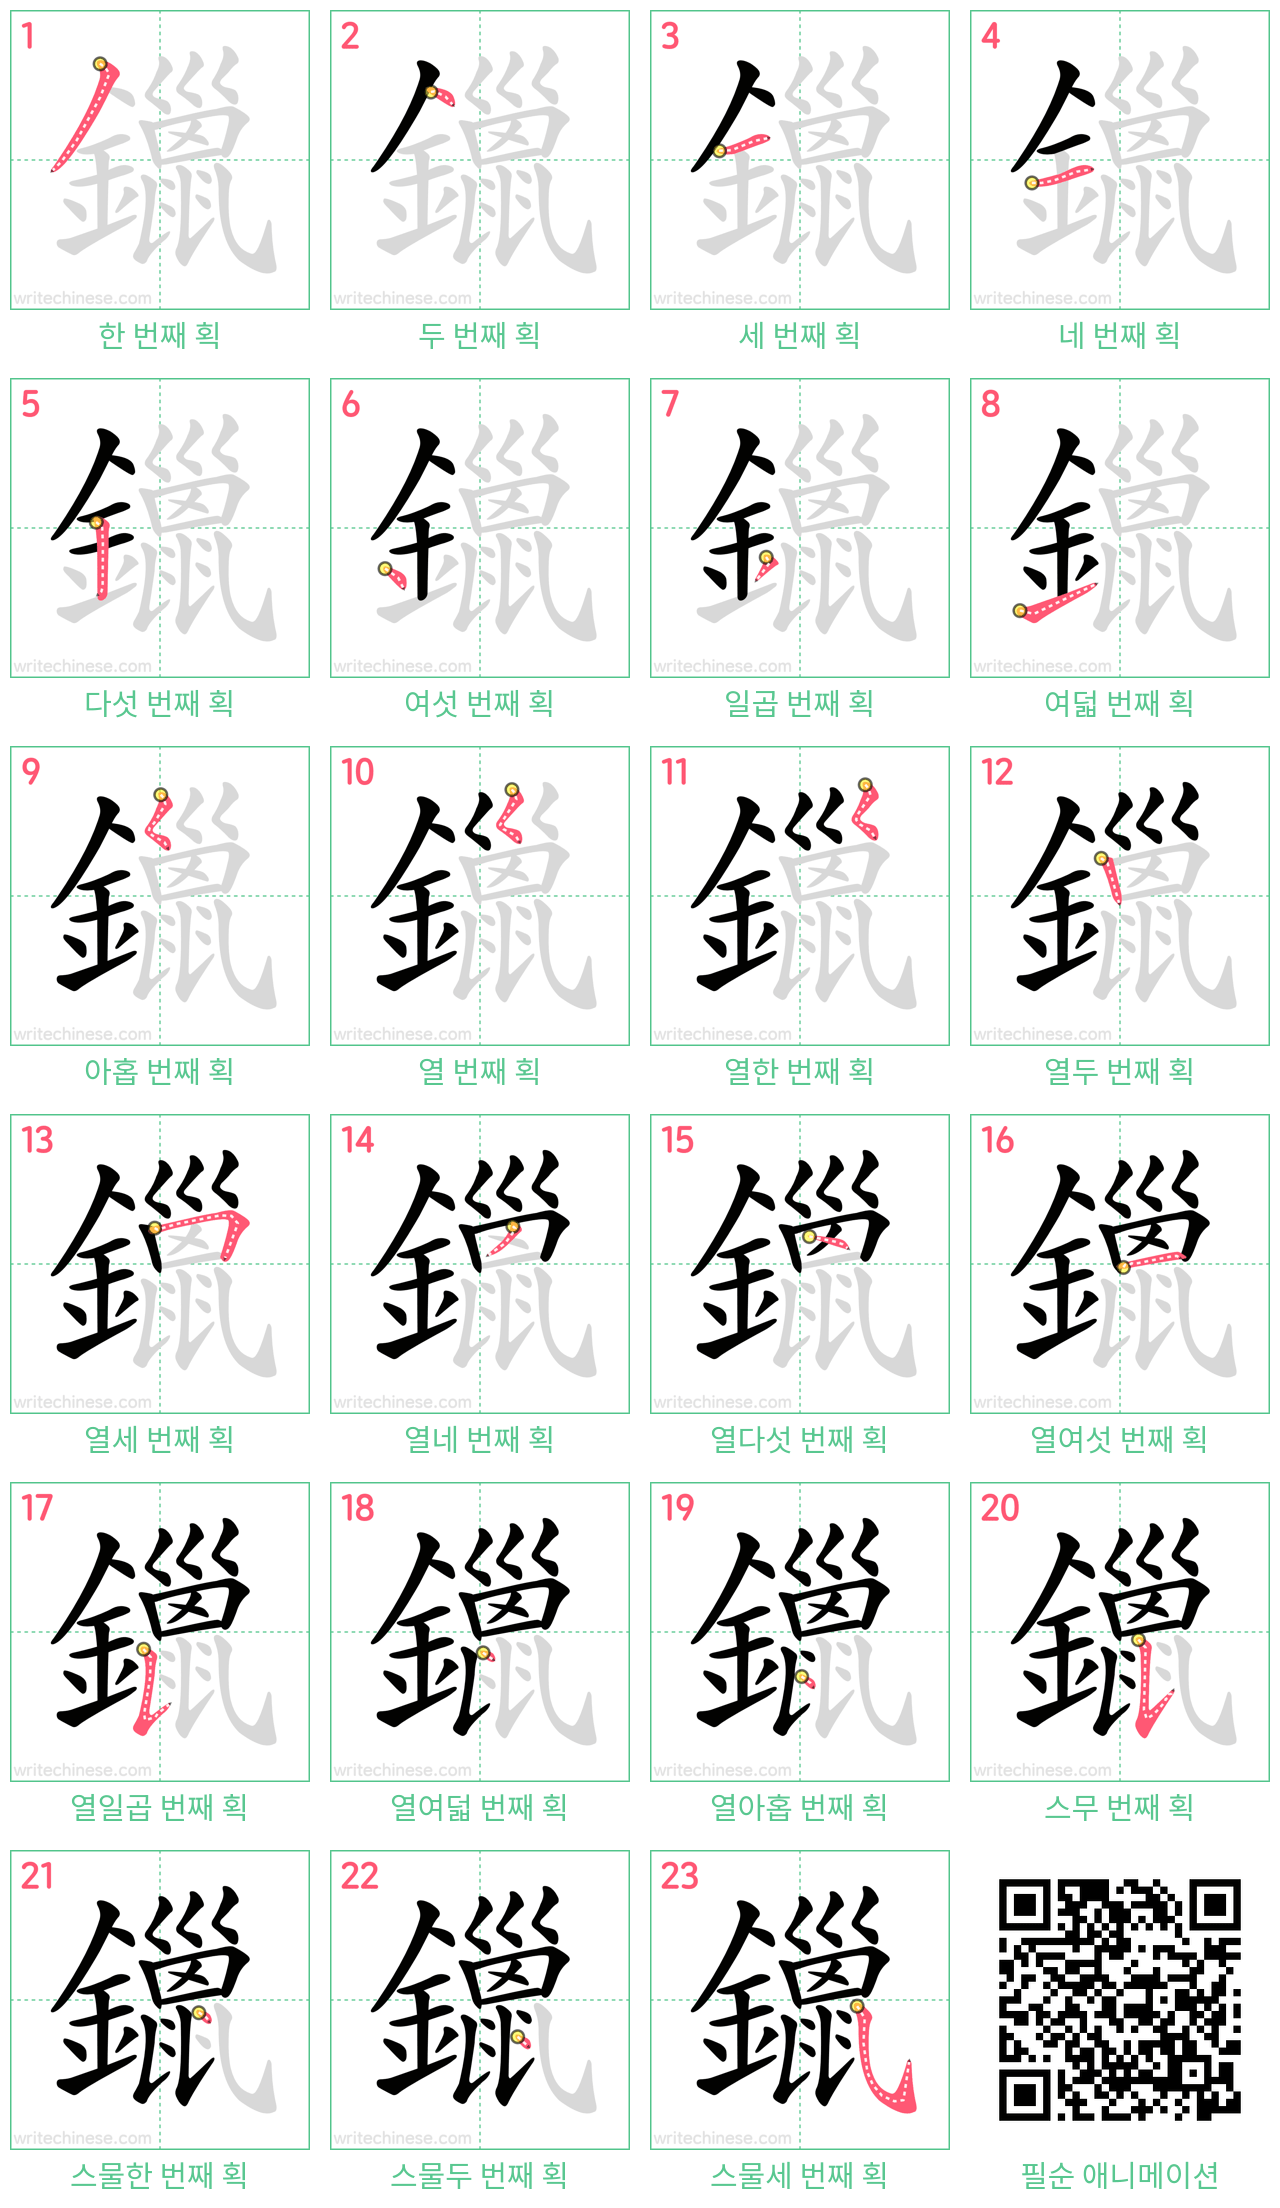 鑞 step-by-step stroke order diagrams